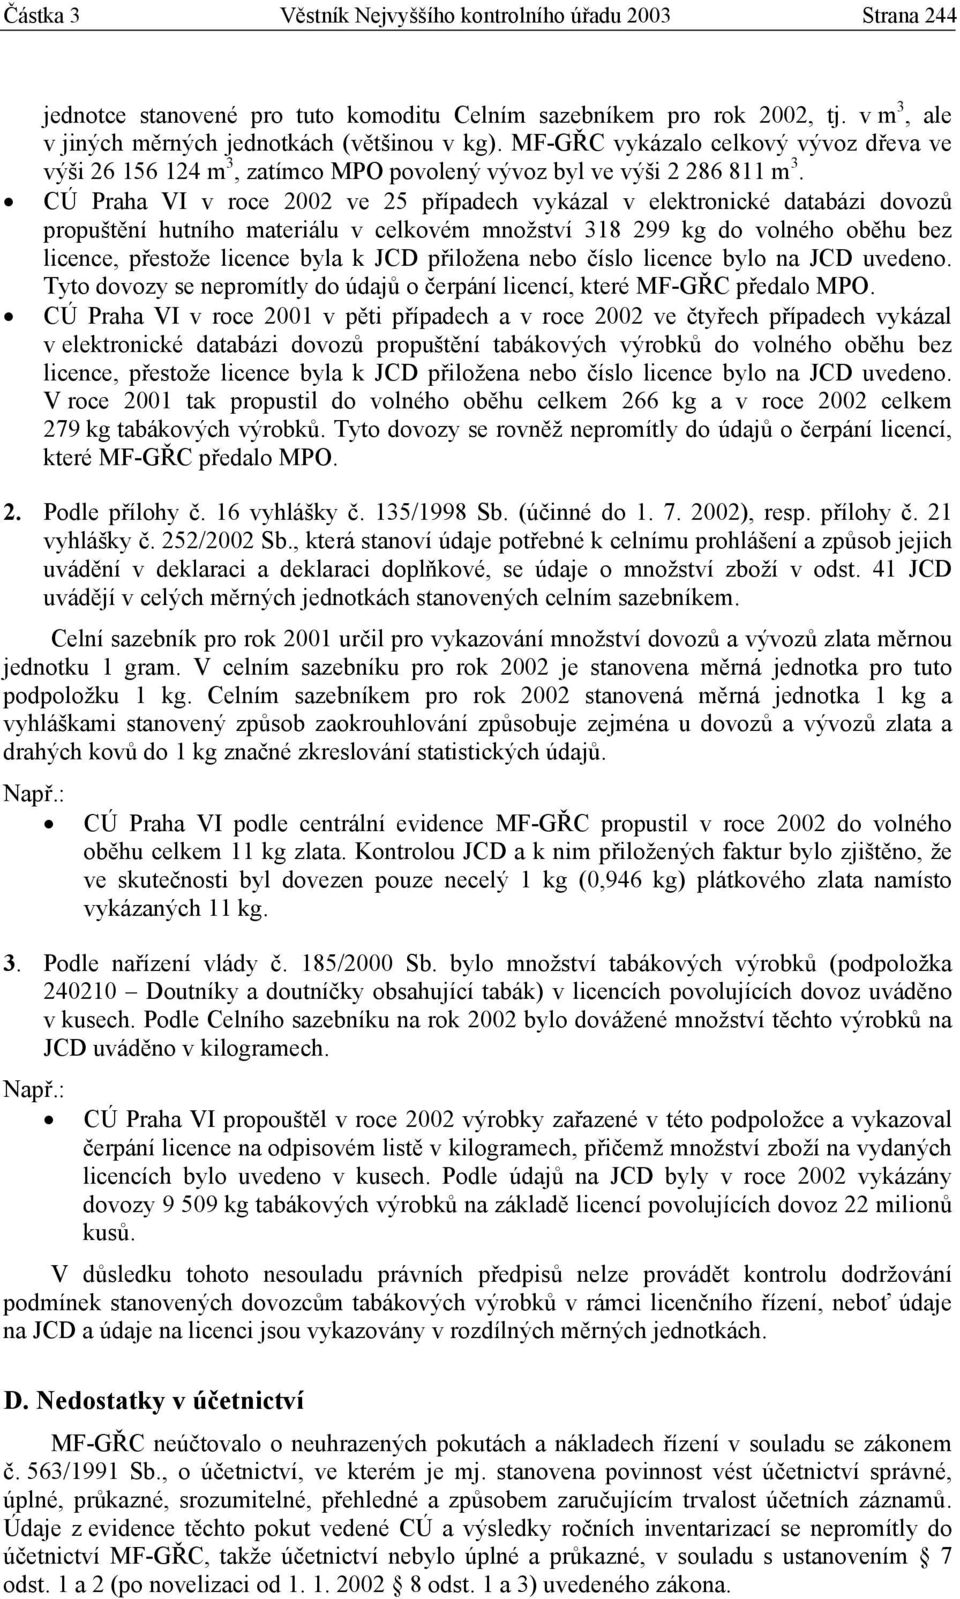 CÚ Praha VI v roce 2002 ve 25 případech vykázal v elektronické databázi dovozů propuštění hutního materiálu v celkovém množství 318 299 kg do volného oběhu bez licence, přestože licence byla k JCD